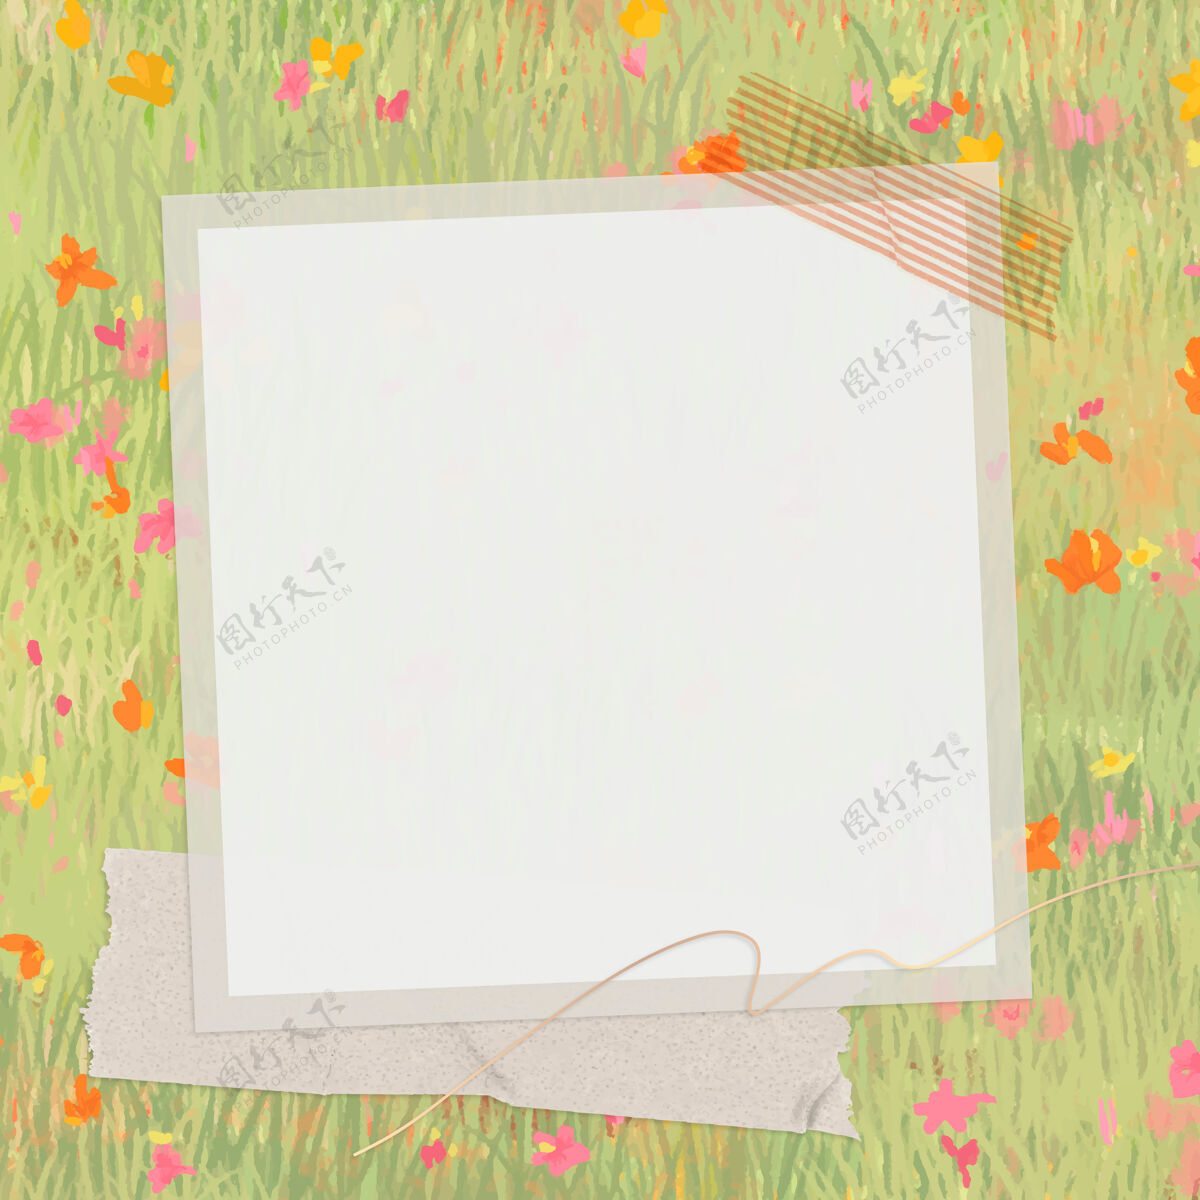 画框在春暖花开的田野上定格纸张纹理花卉绘图